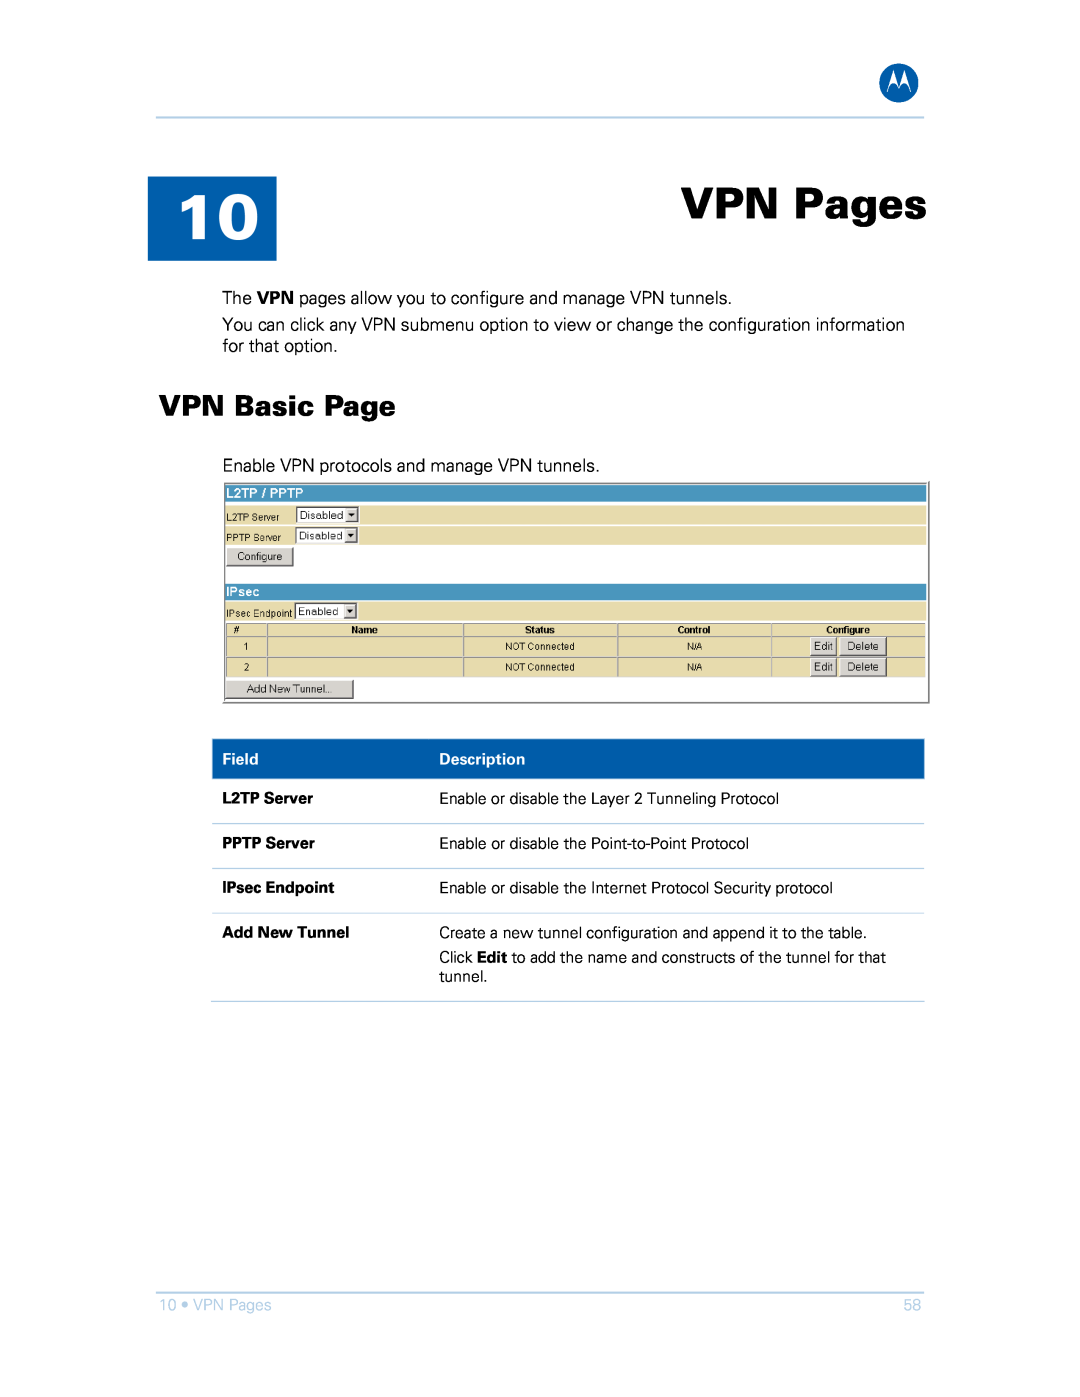 Motorola SVG1501UE, SVG1501E manual VPN Pages, VPN Basic Page 